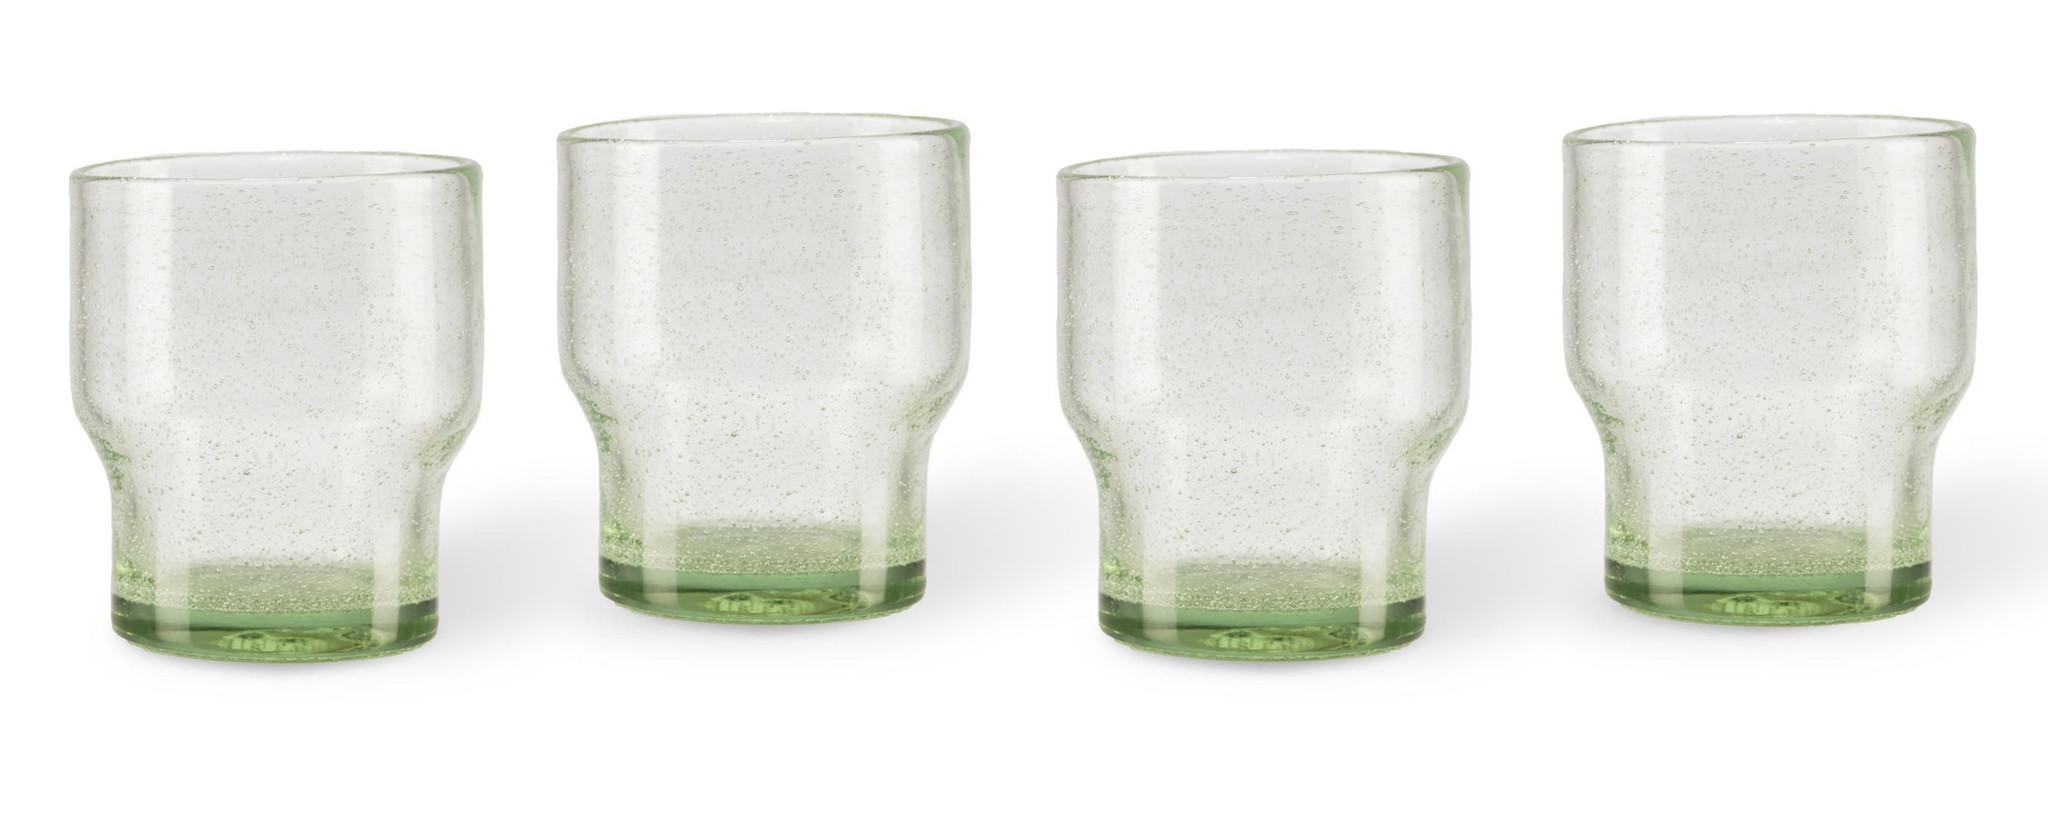 emulsie meester Zonder twijfel Bubbles waterglas groen - set van 4 - vida design